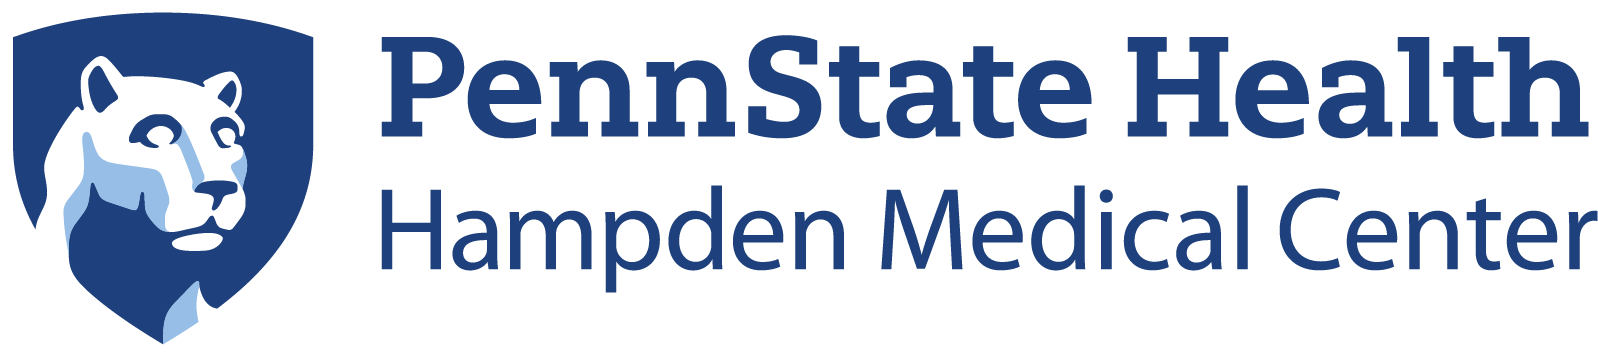 PennState Health Hampden Medical Center Logo